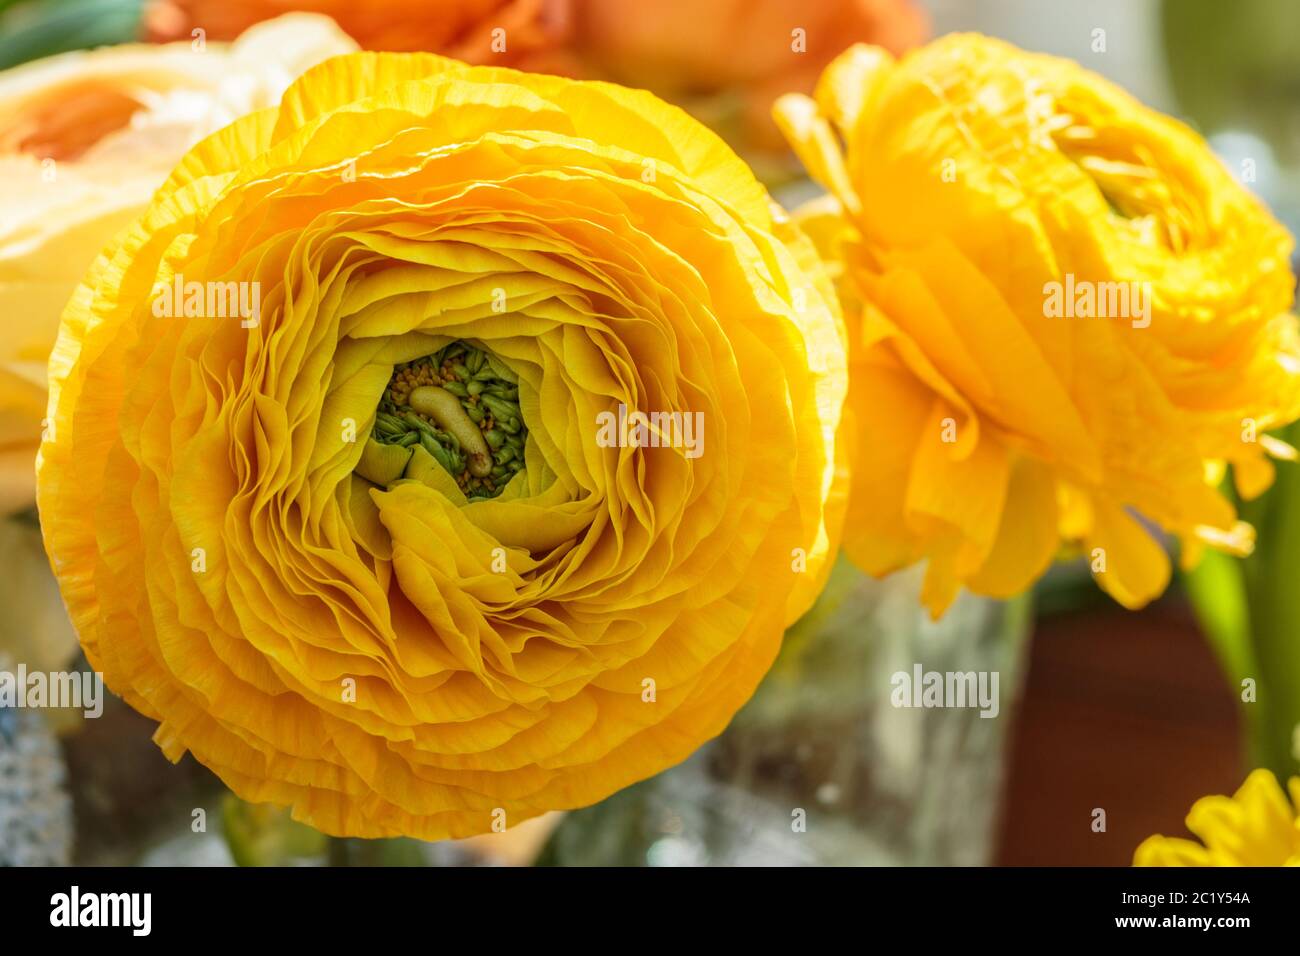 Schöne gelbe krautige Pfingstrose. Сlose Ansicht von Ranunculus aka Butterblume, exquisit, mit einer Rose-ähnlichen Blüten. Pers Stockfoto